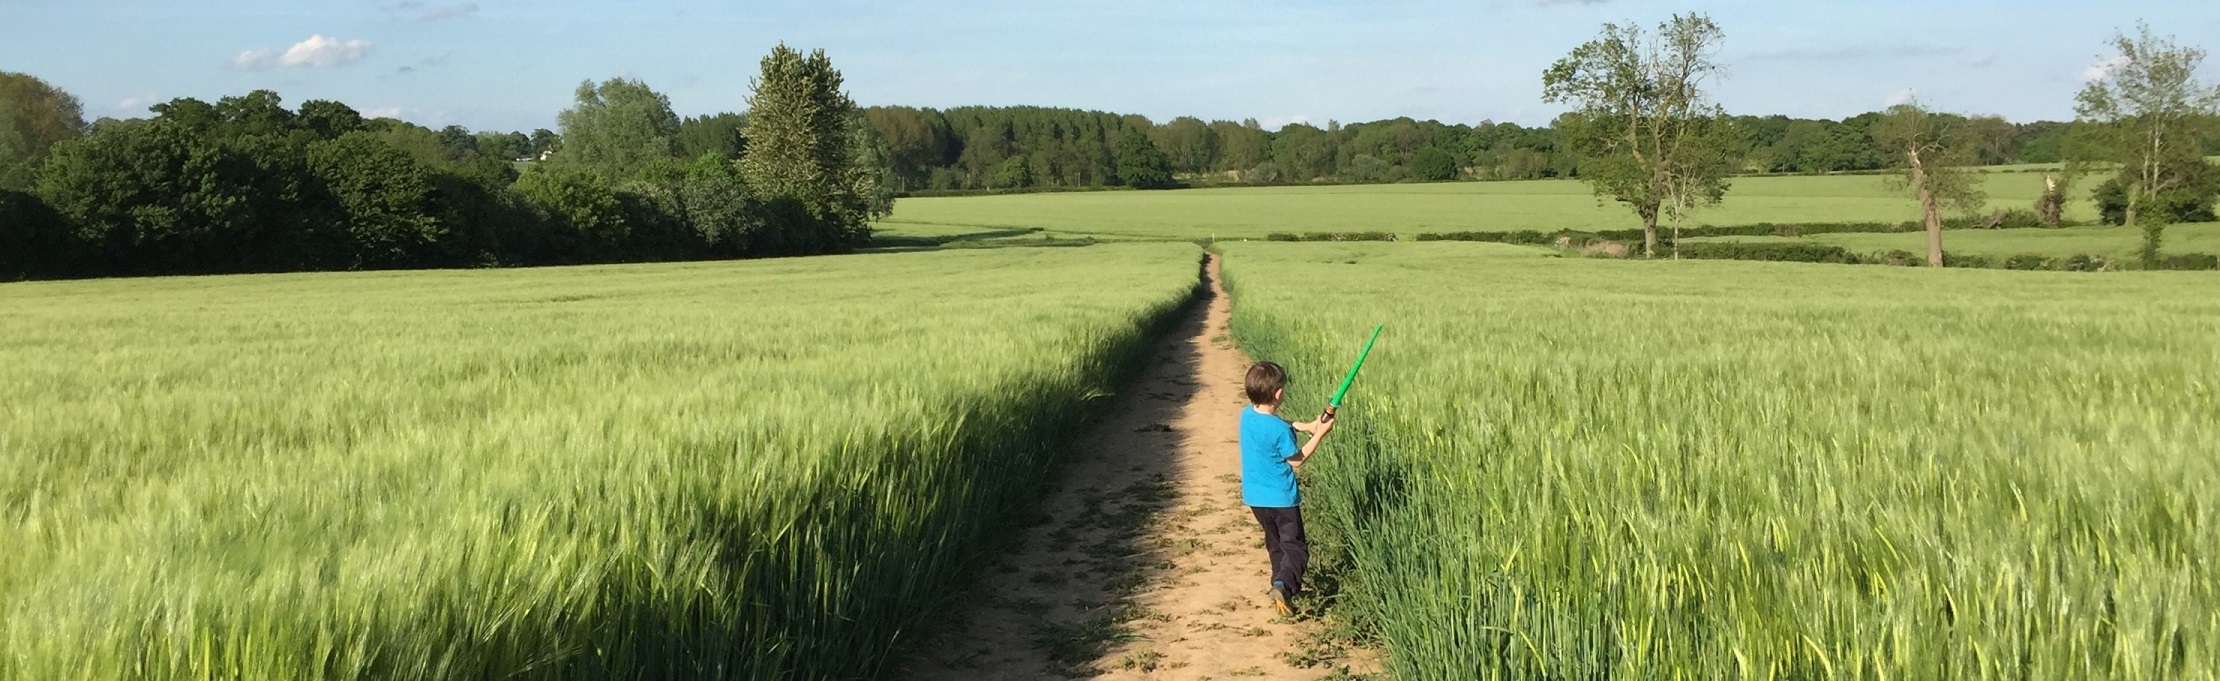 Fields of green wheat